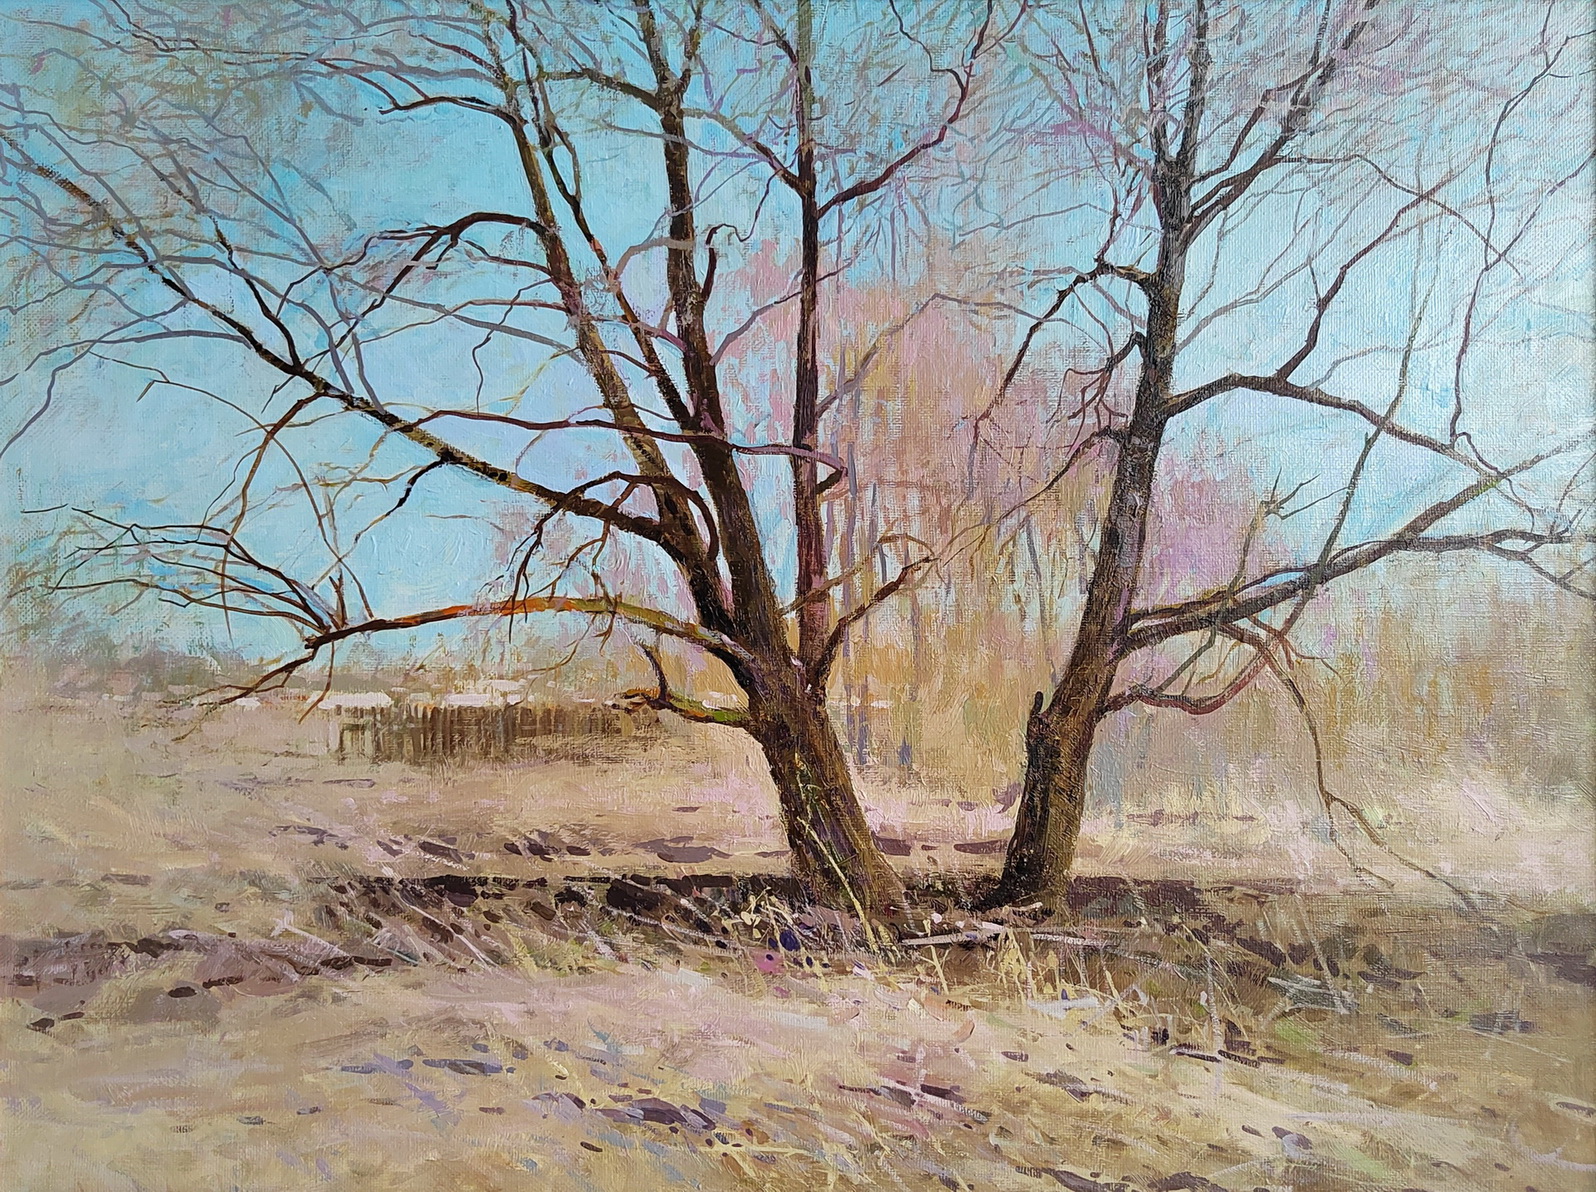 Awakening - 1, Nikolay Petrov, Buy the painting Oil